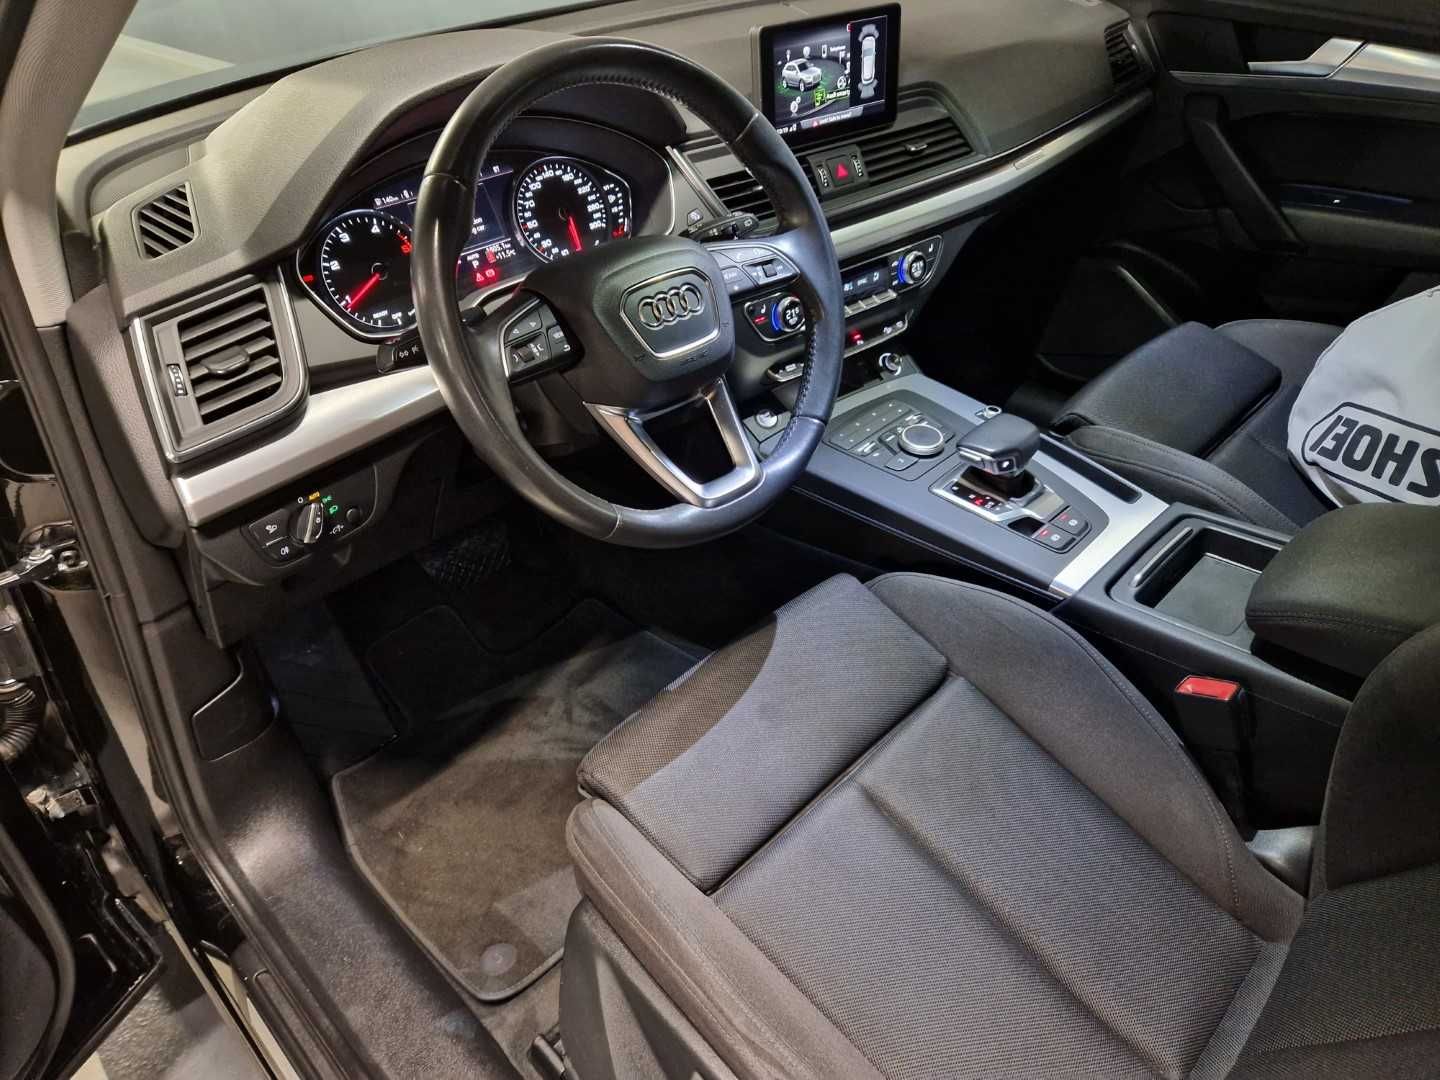 Audi Q5 2019, 40 TDI 190 CP Quattro